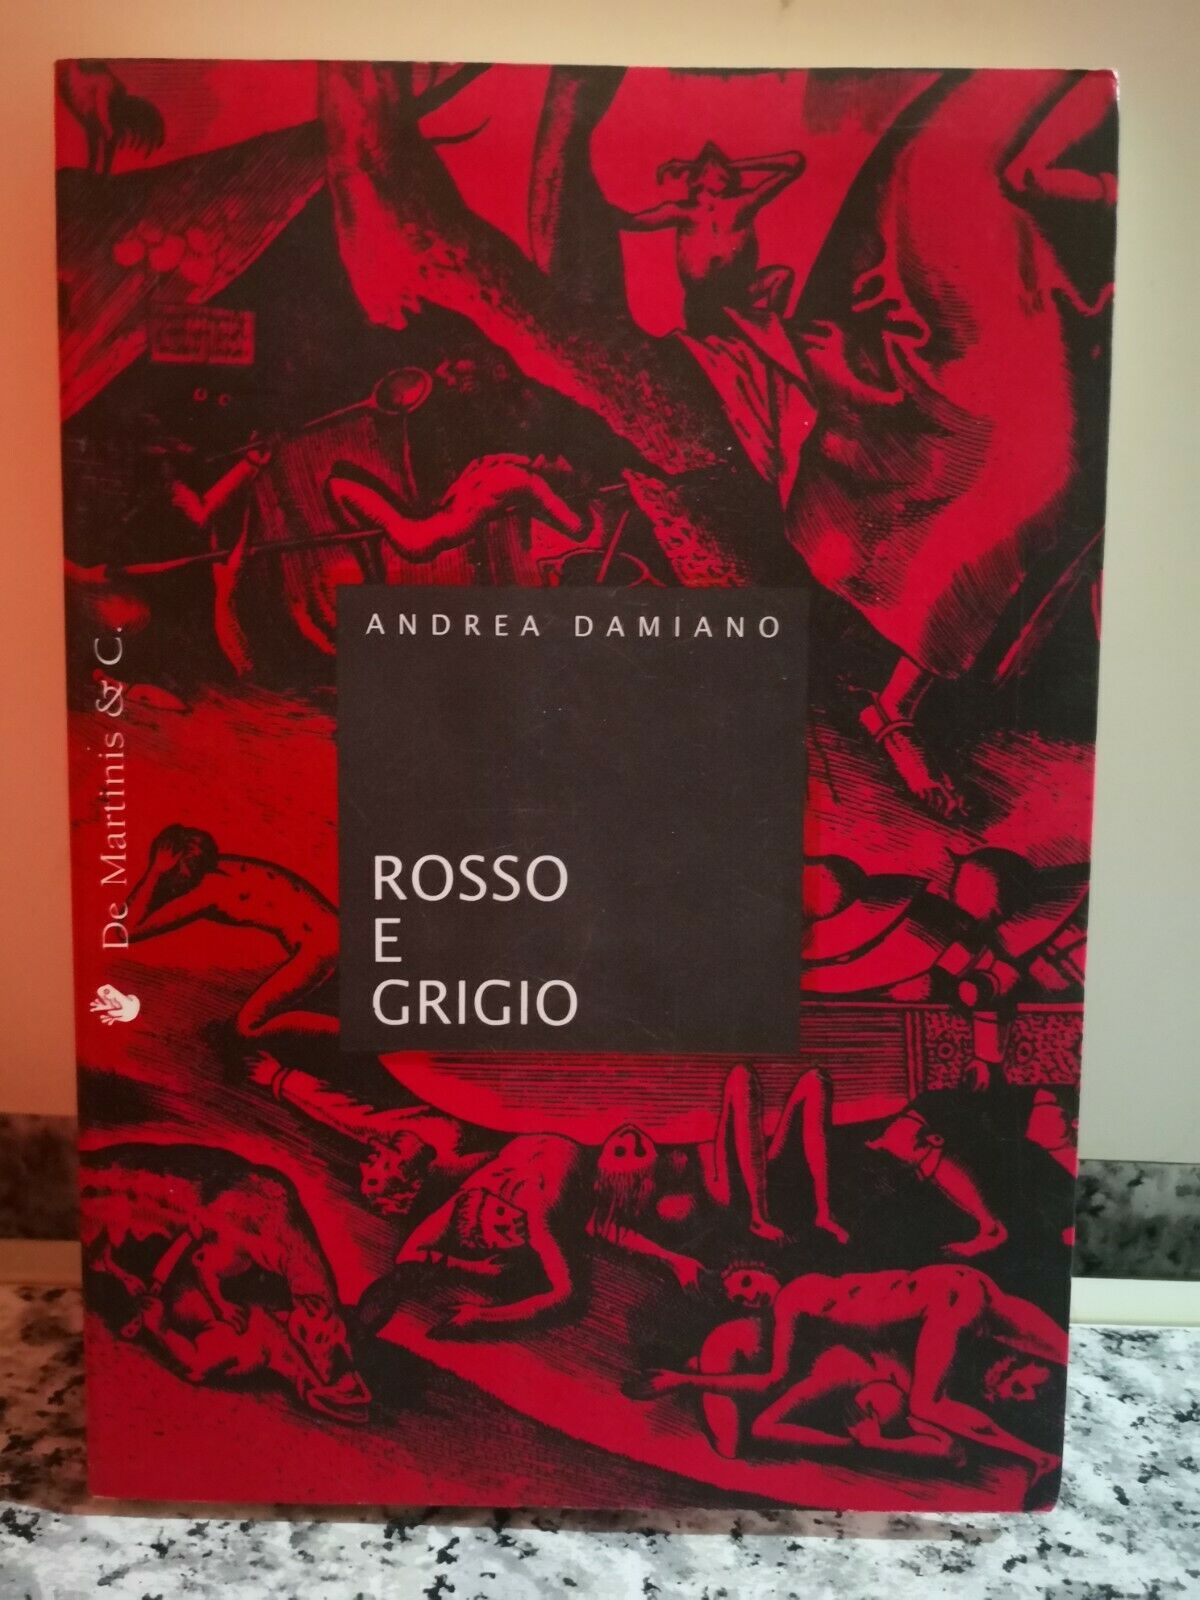 Rosso e grigio  di Andrea Damiano,  1995,  De Martinis -F